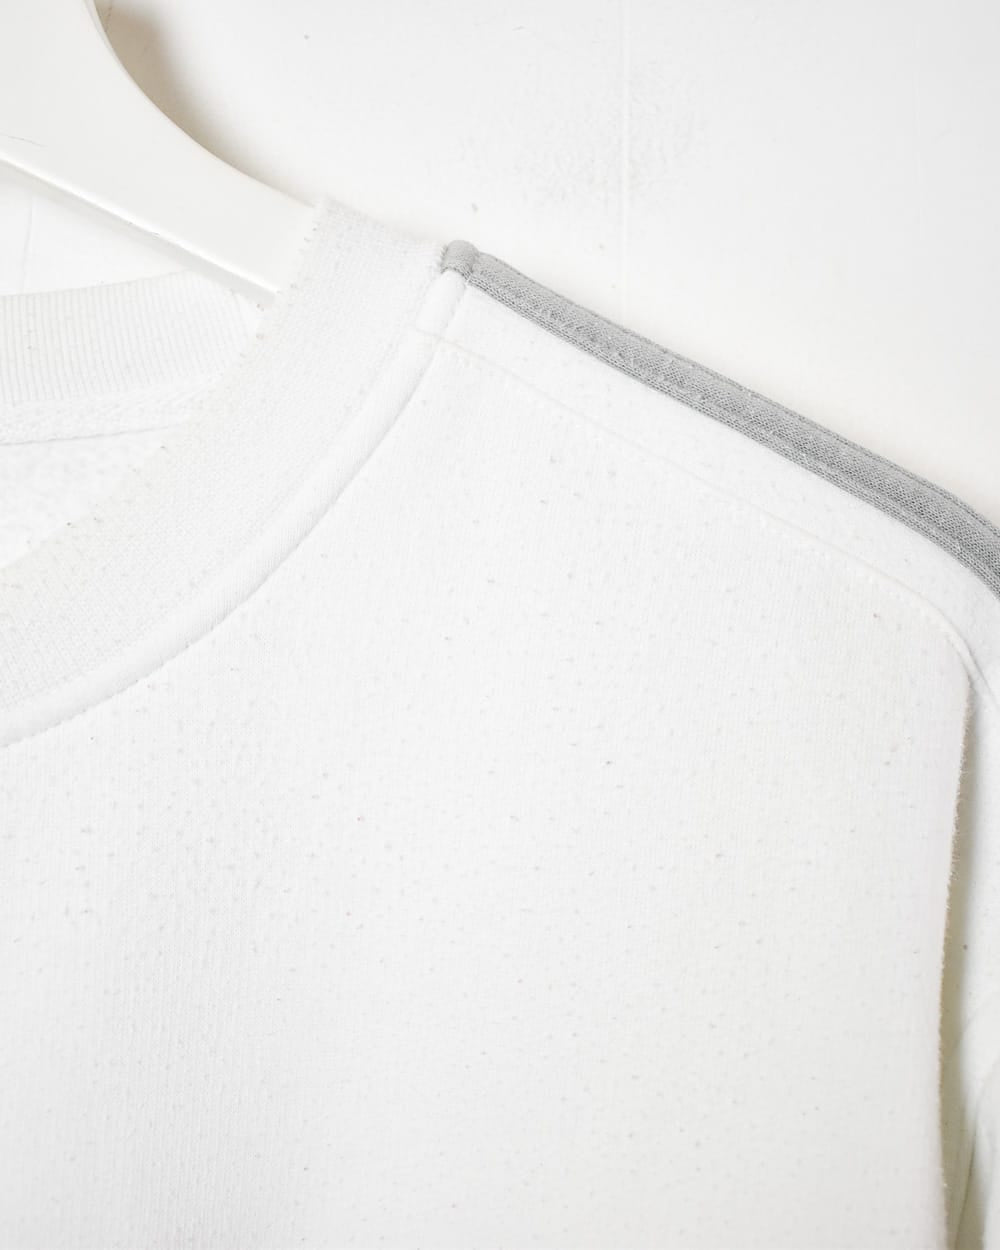 White Adidas Sweatshirt - Large